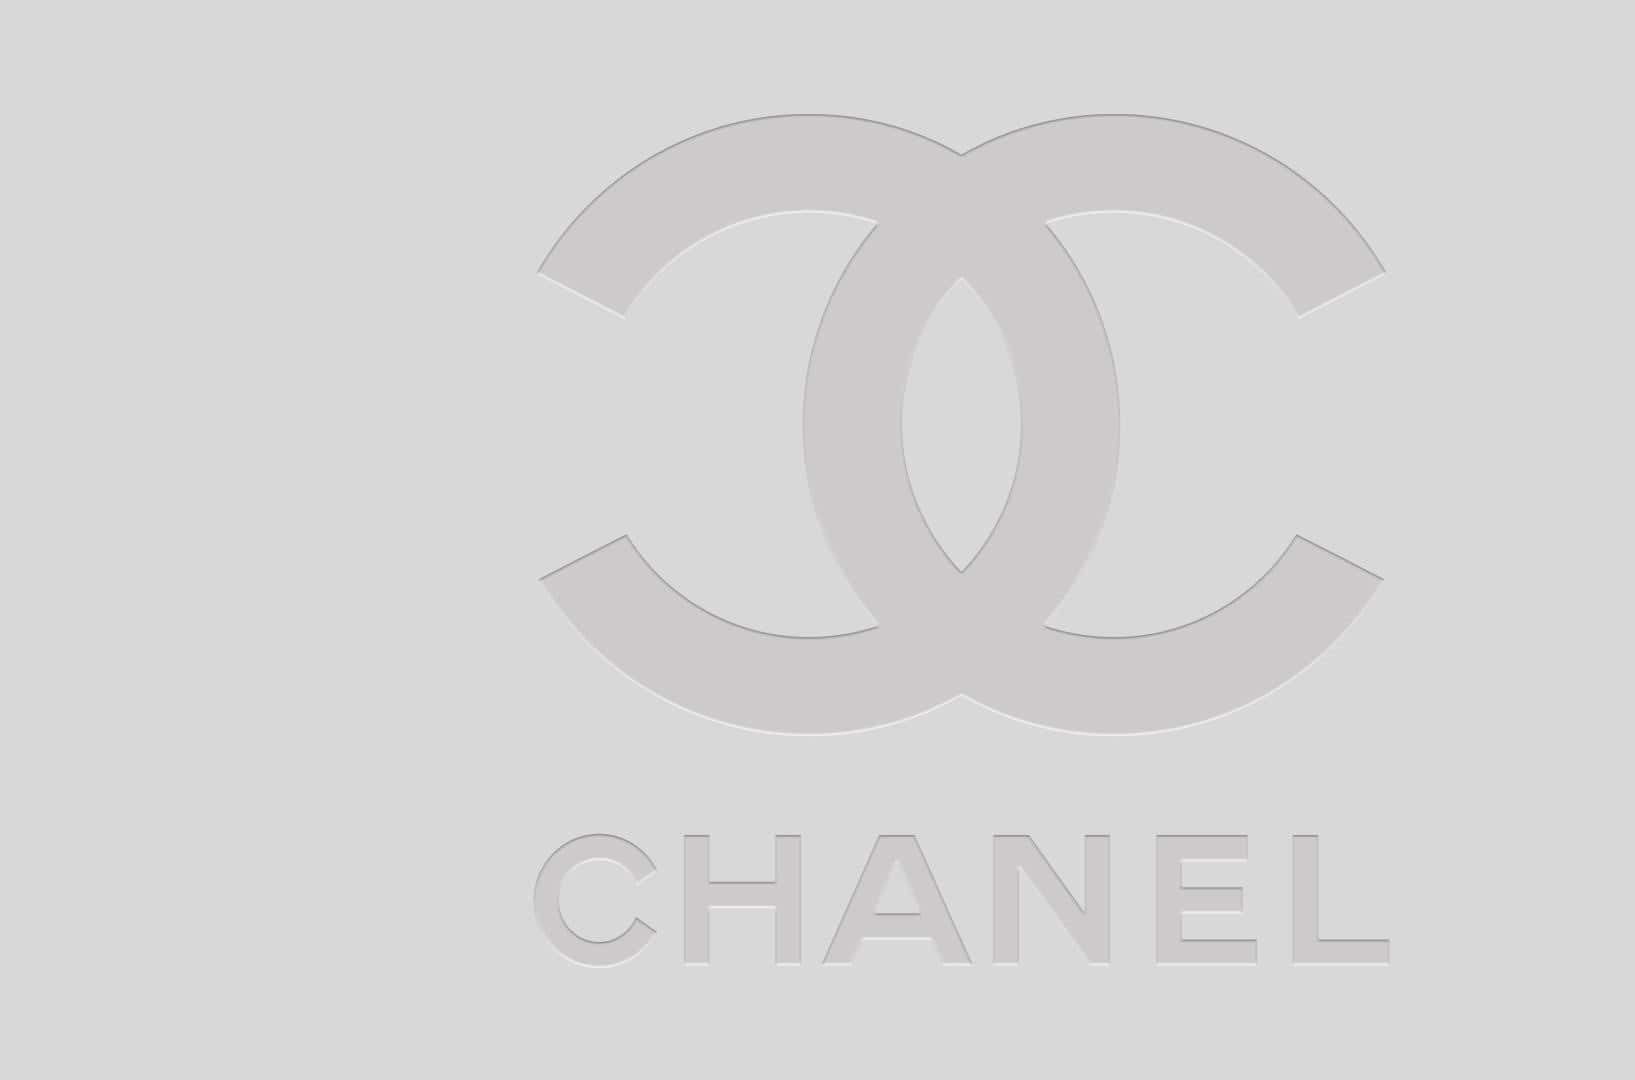 Denikoniska Chanel-logotypen Med Sina Korsade C:n.